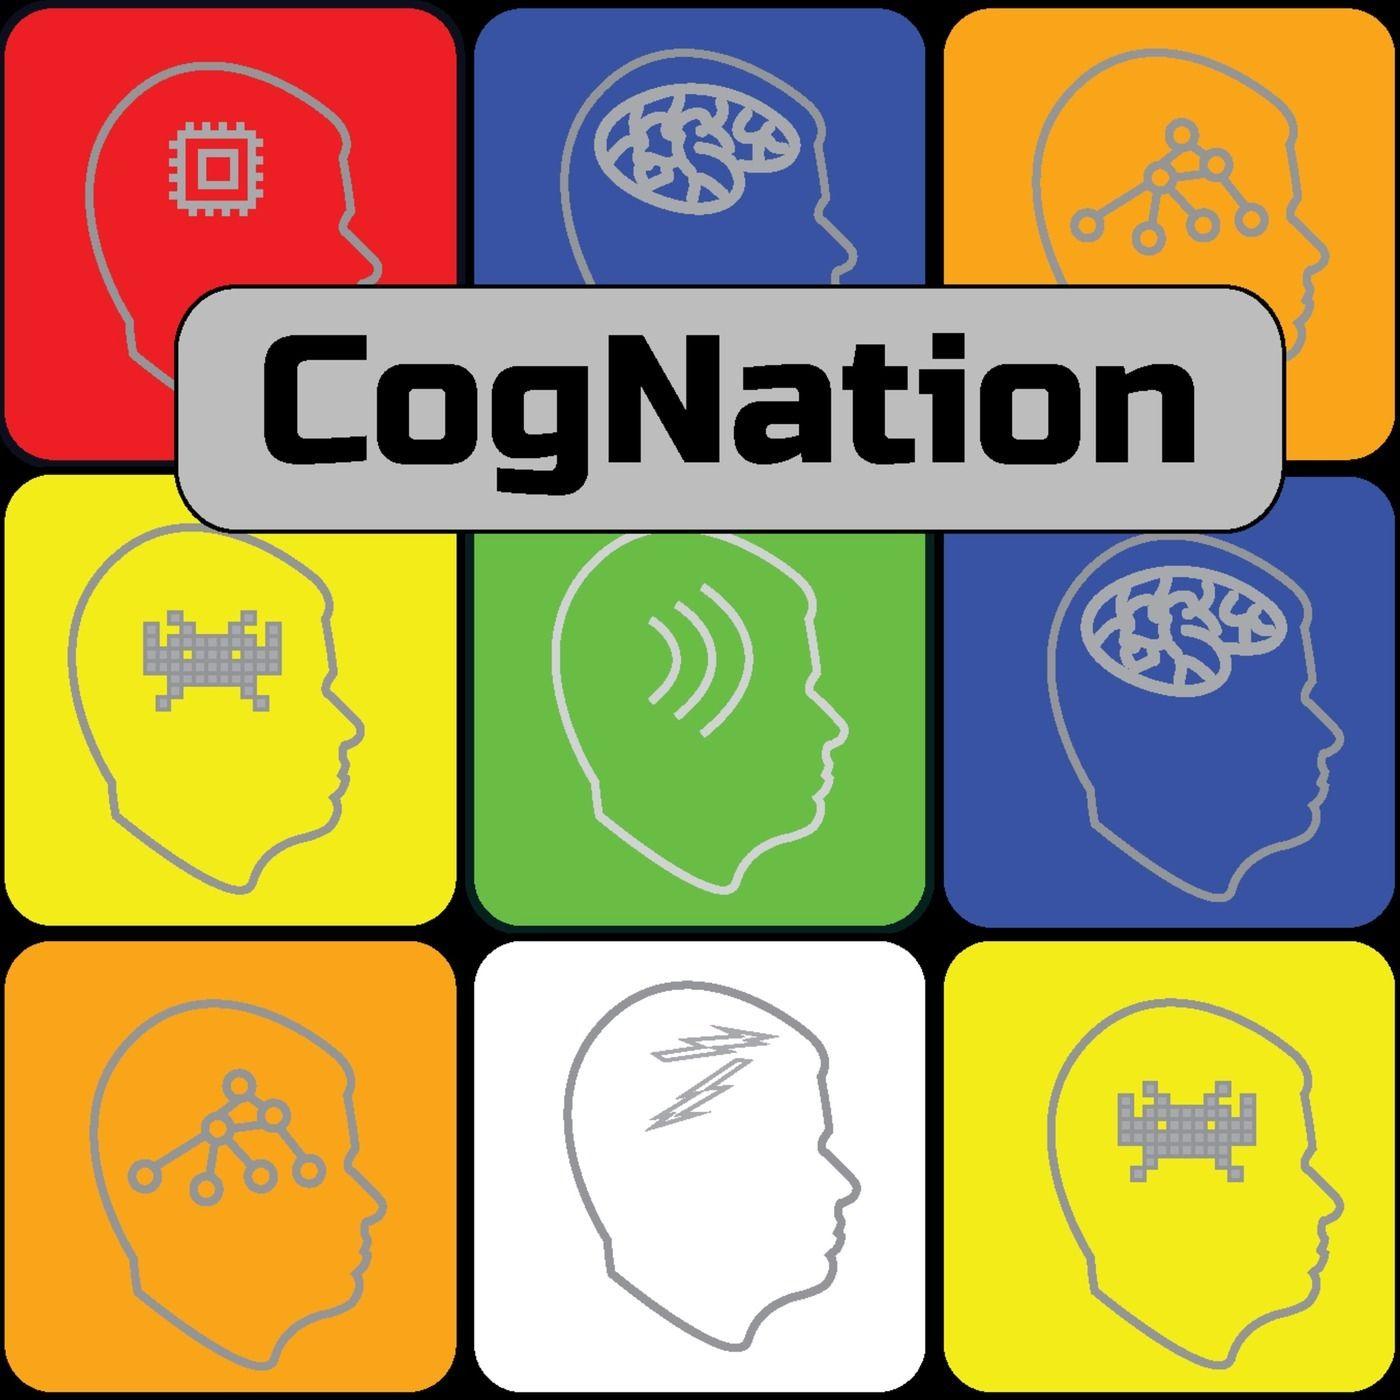 Neuralink Logo - CogNation Episode 3b: Brain-Computer Interfaces, part B